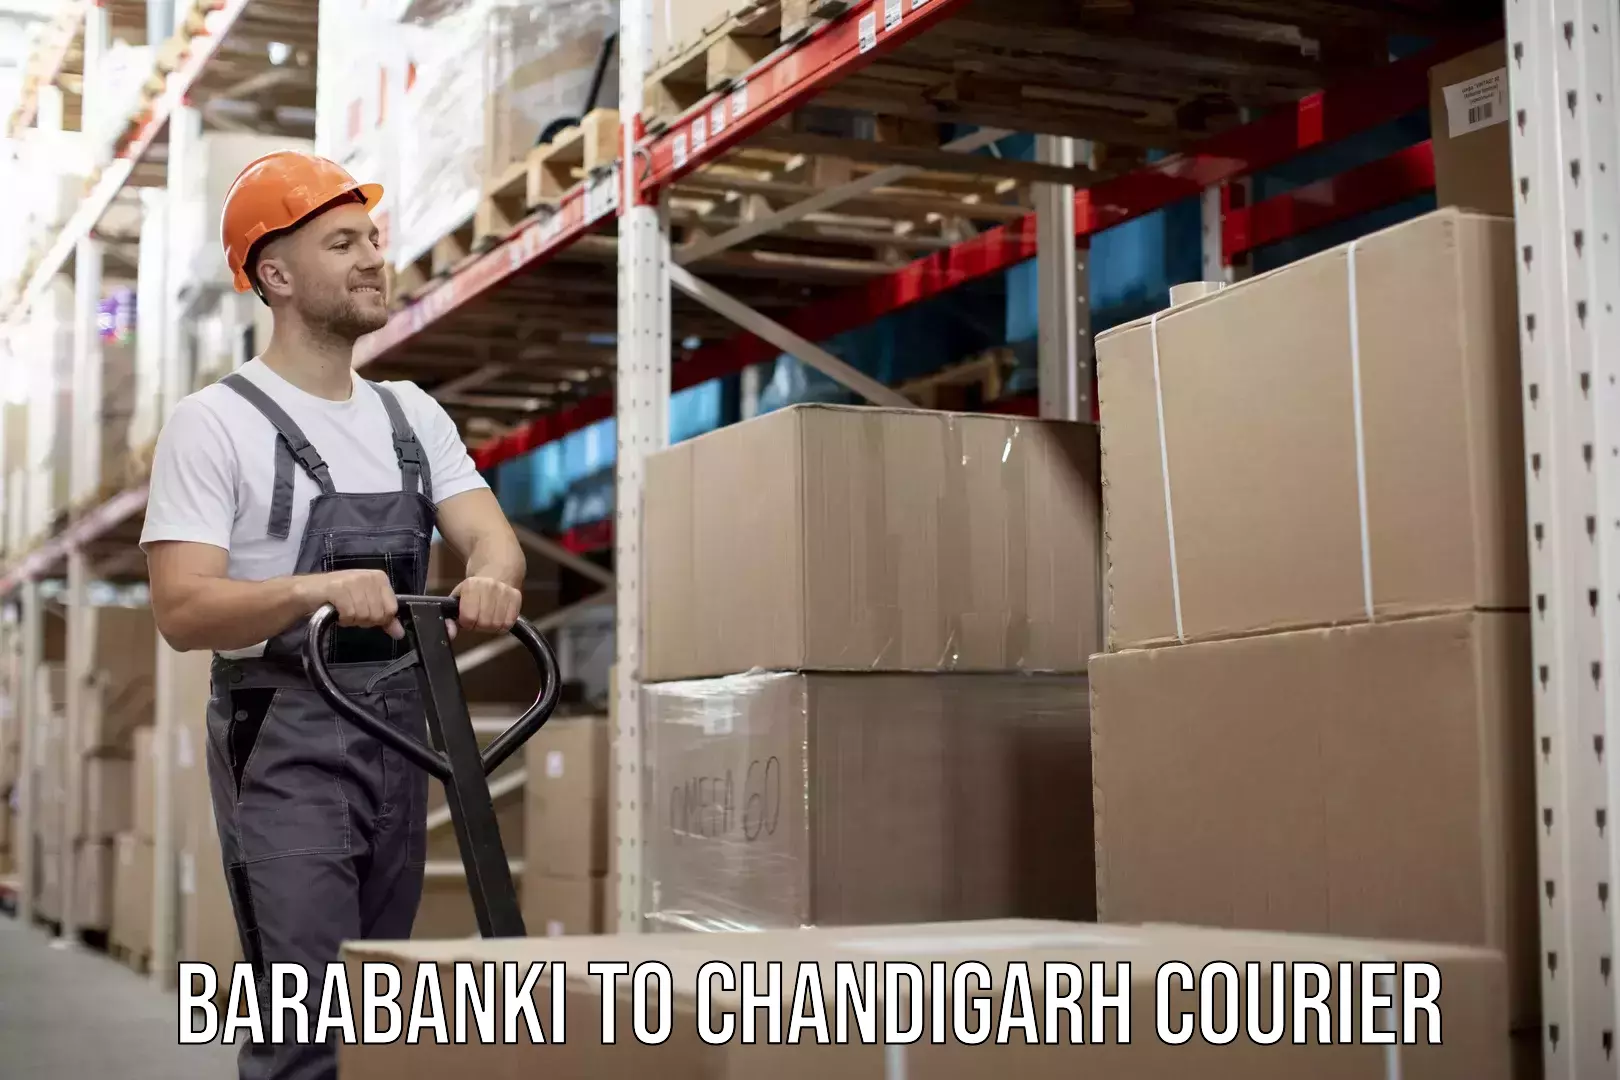 Efficient parcel service Barabanki to Chandigarh